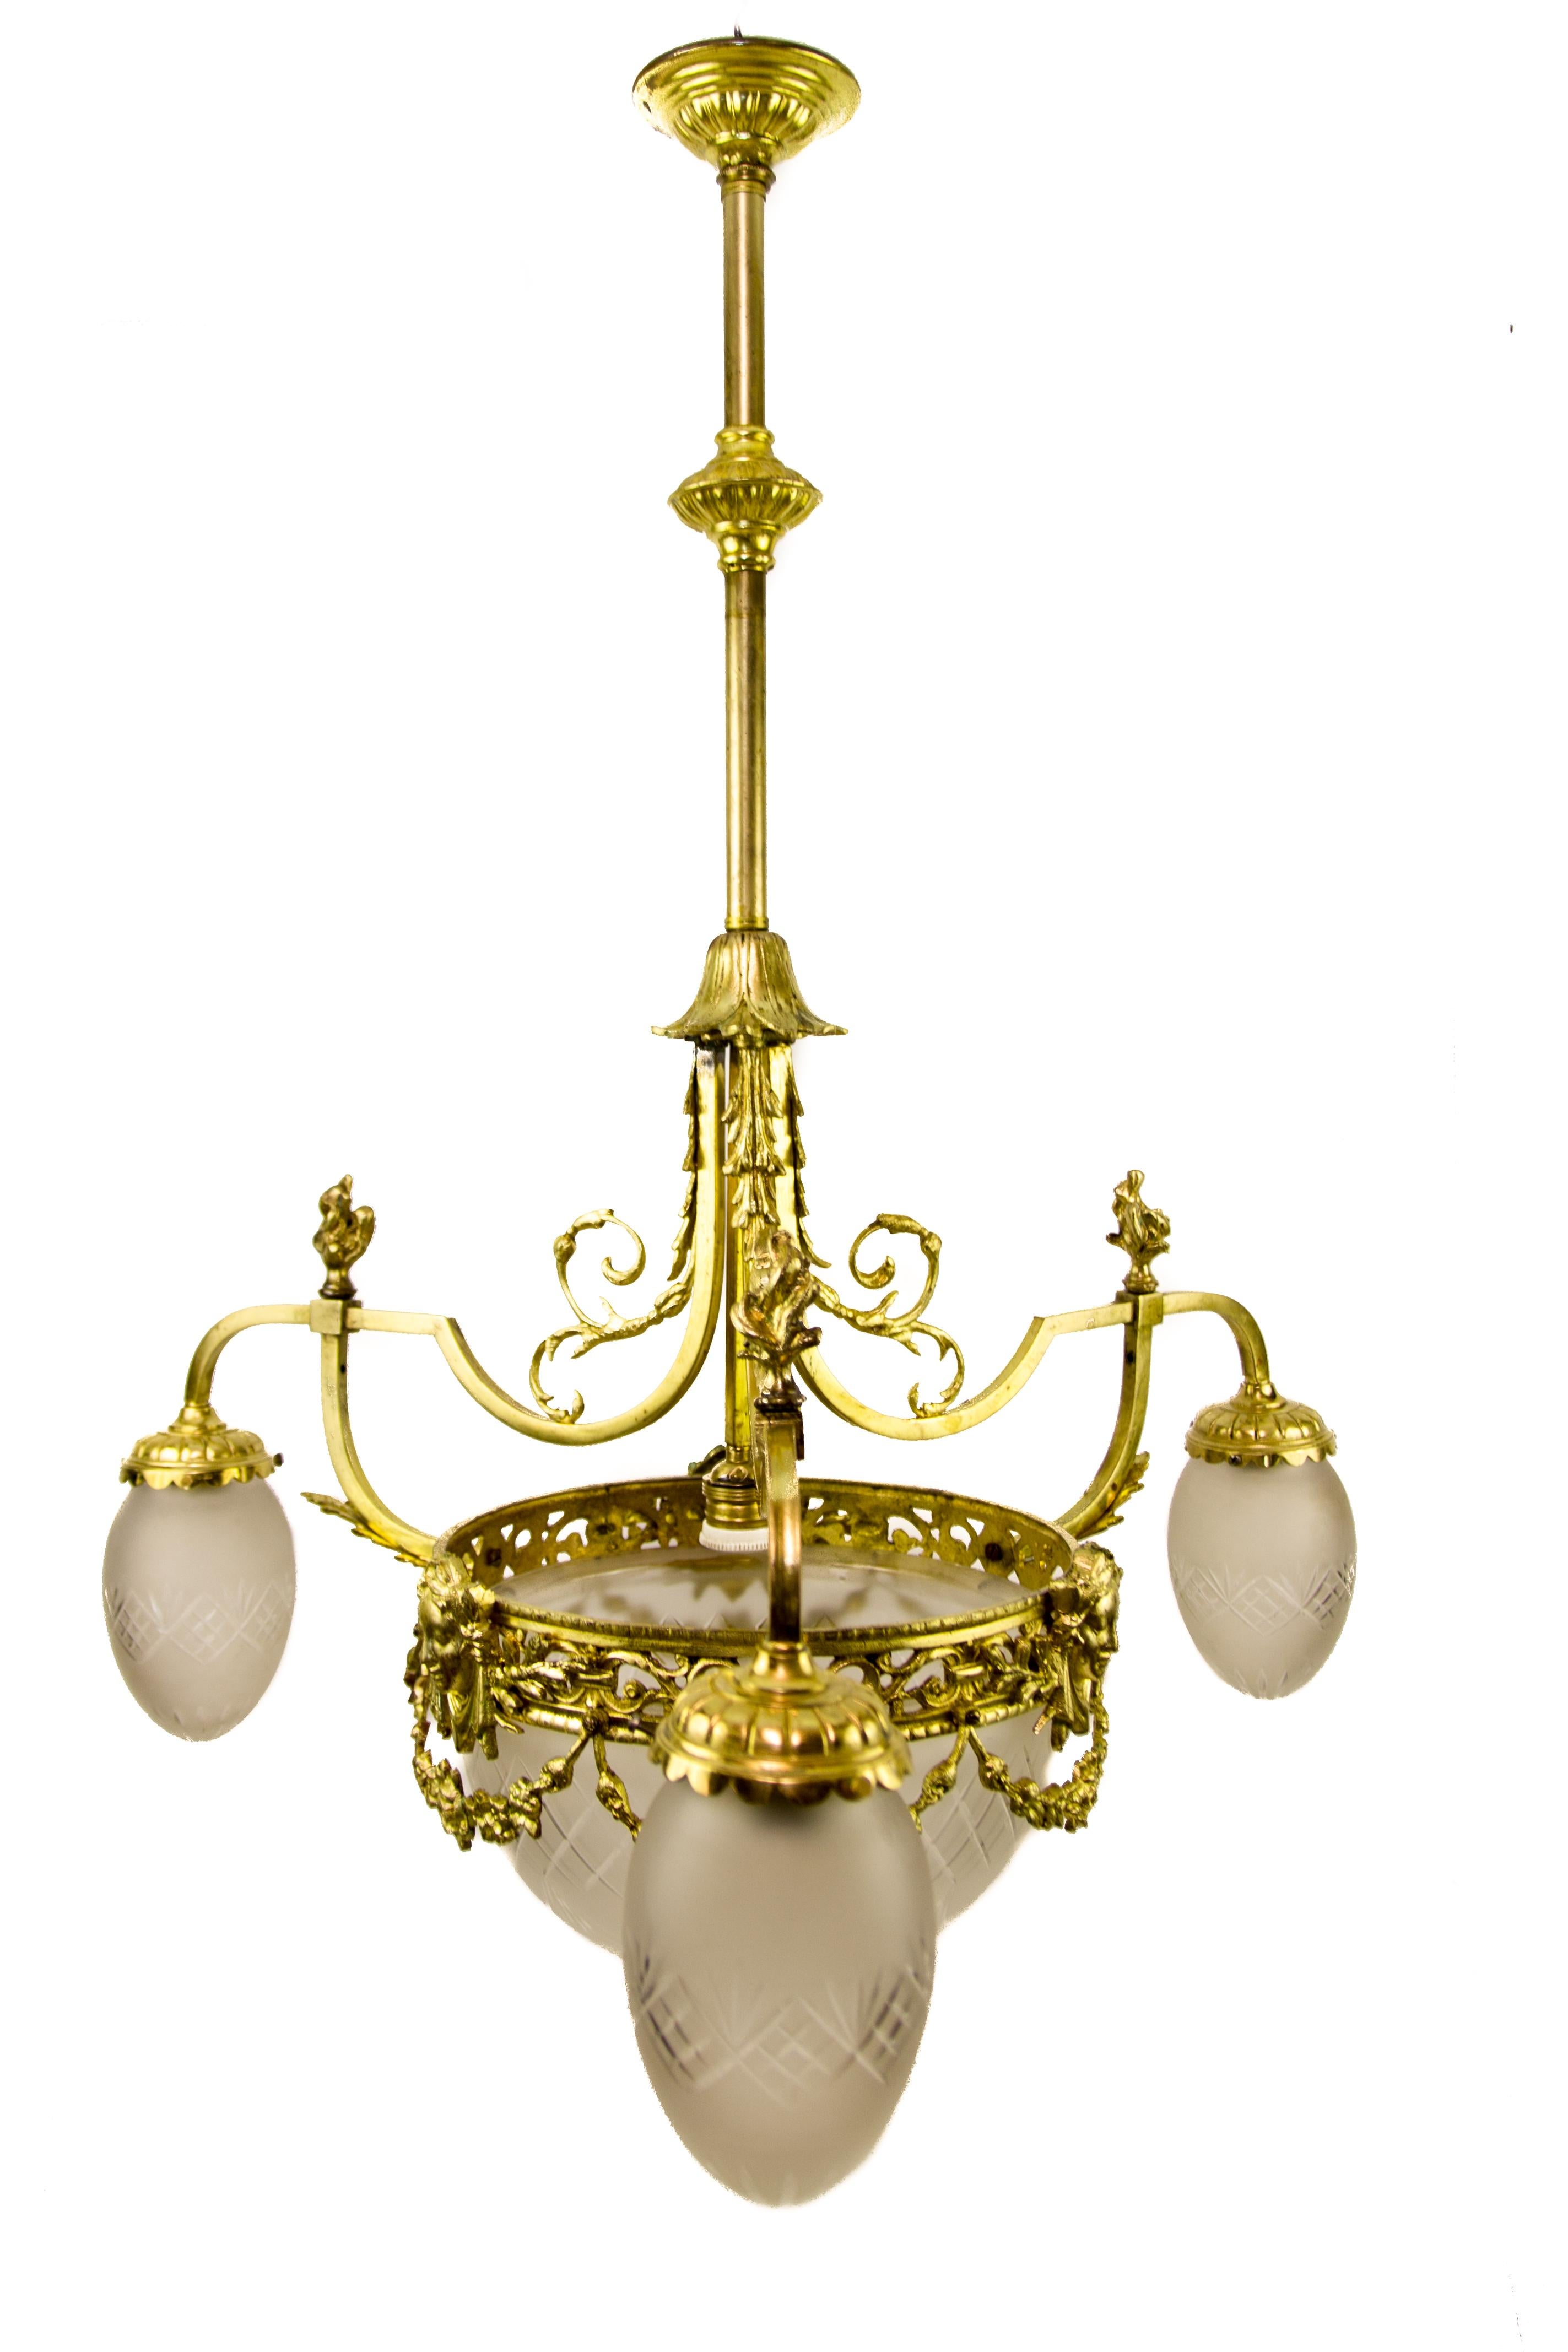 Vergoldeter Bronzeleuchter im Louis-XIV-Stil aus den 1920er Jahren mit Lampenschirmen aus Milchglas, kunstvoll verziert mit Akanthusblättern, Blumenbüscheln und Karyatidengesichtern. Der antike Kronleuchter hat vier Lichter, jedes mit einer